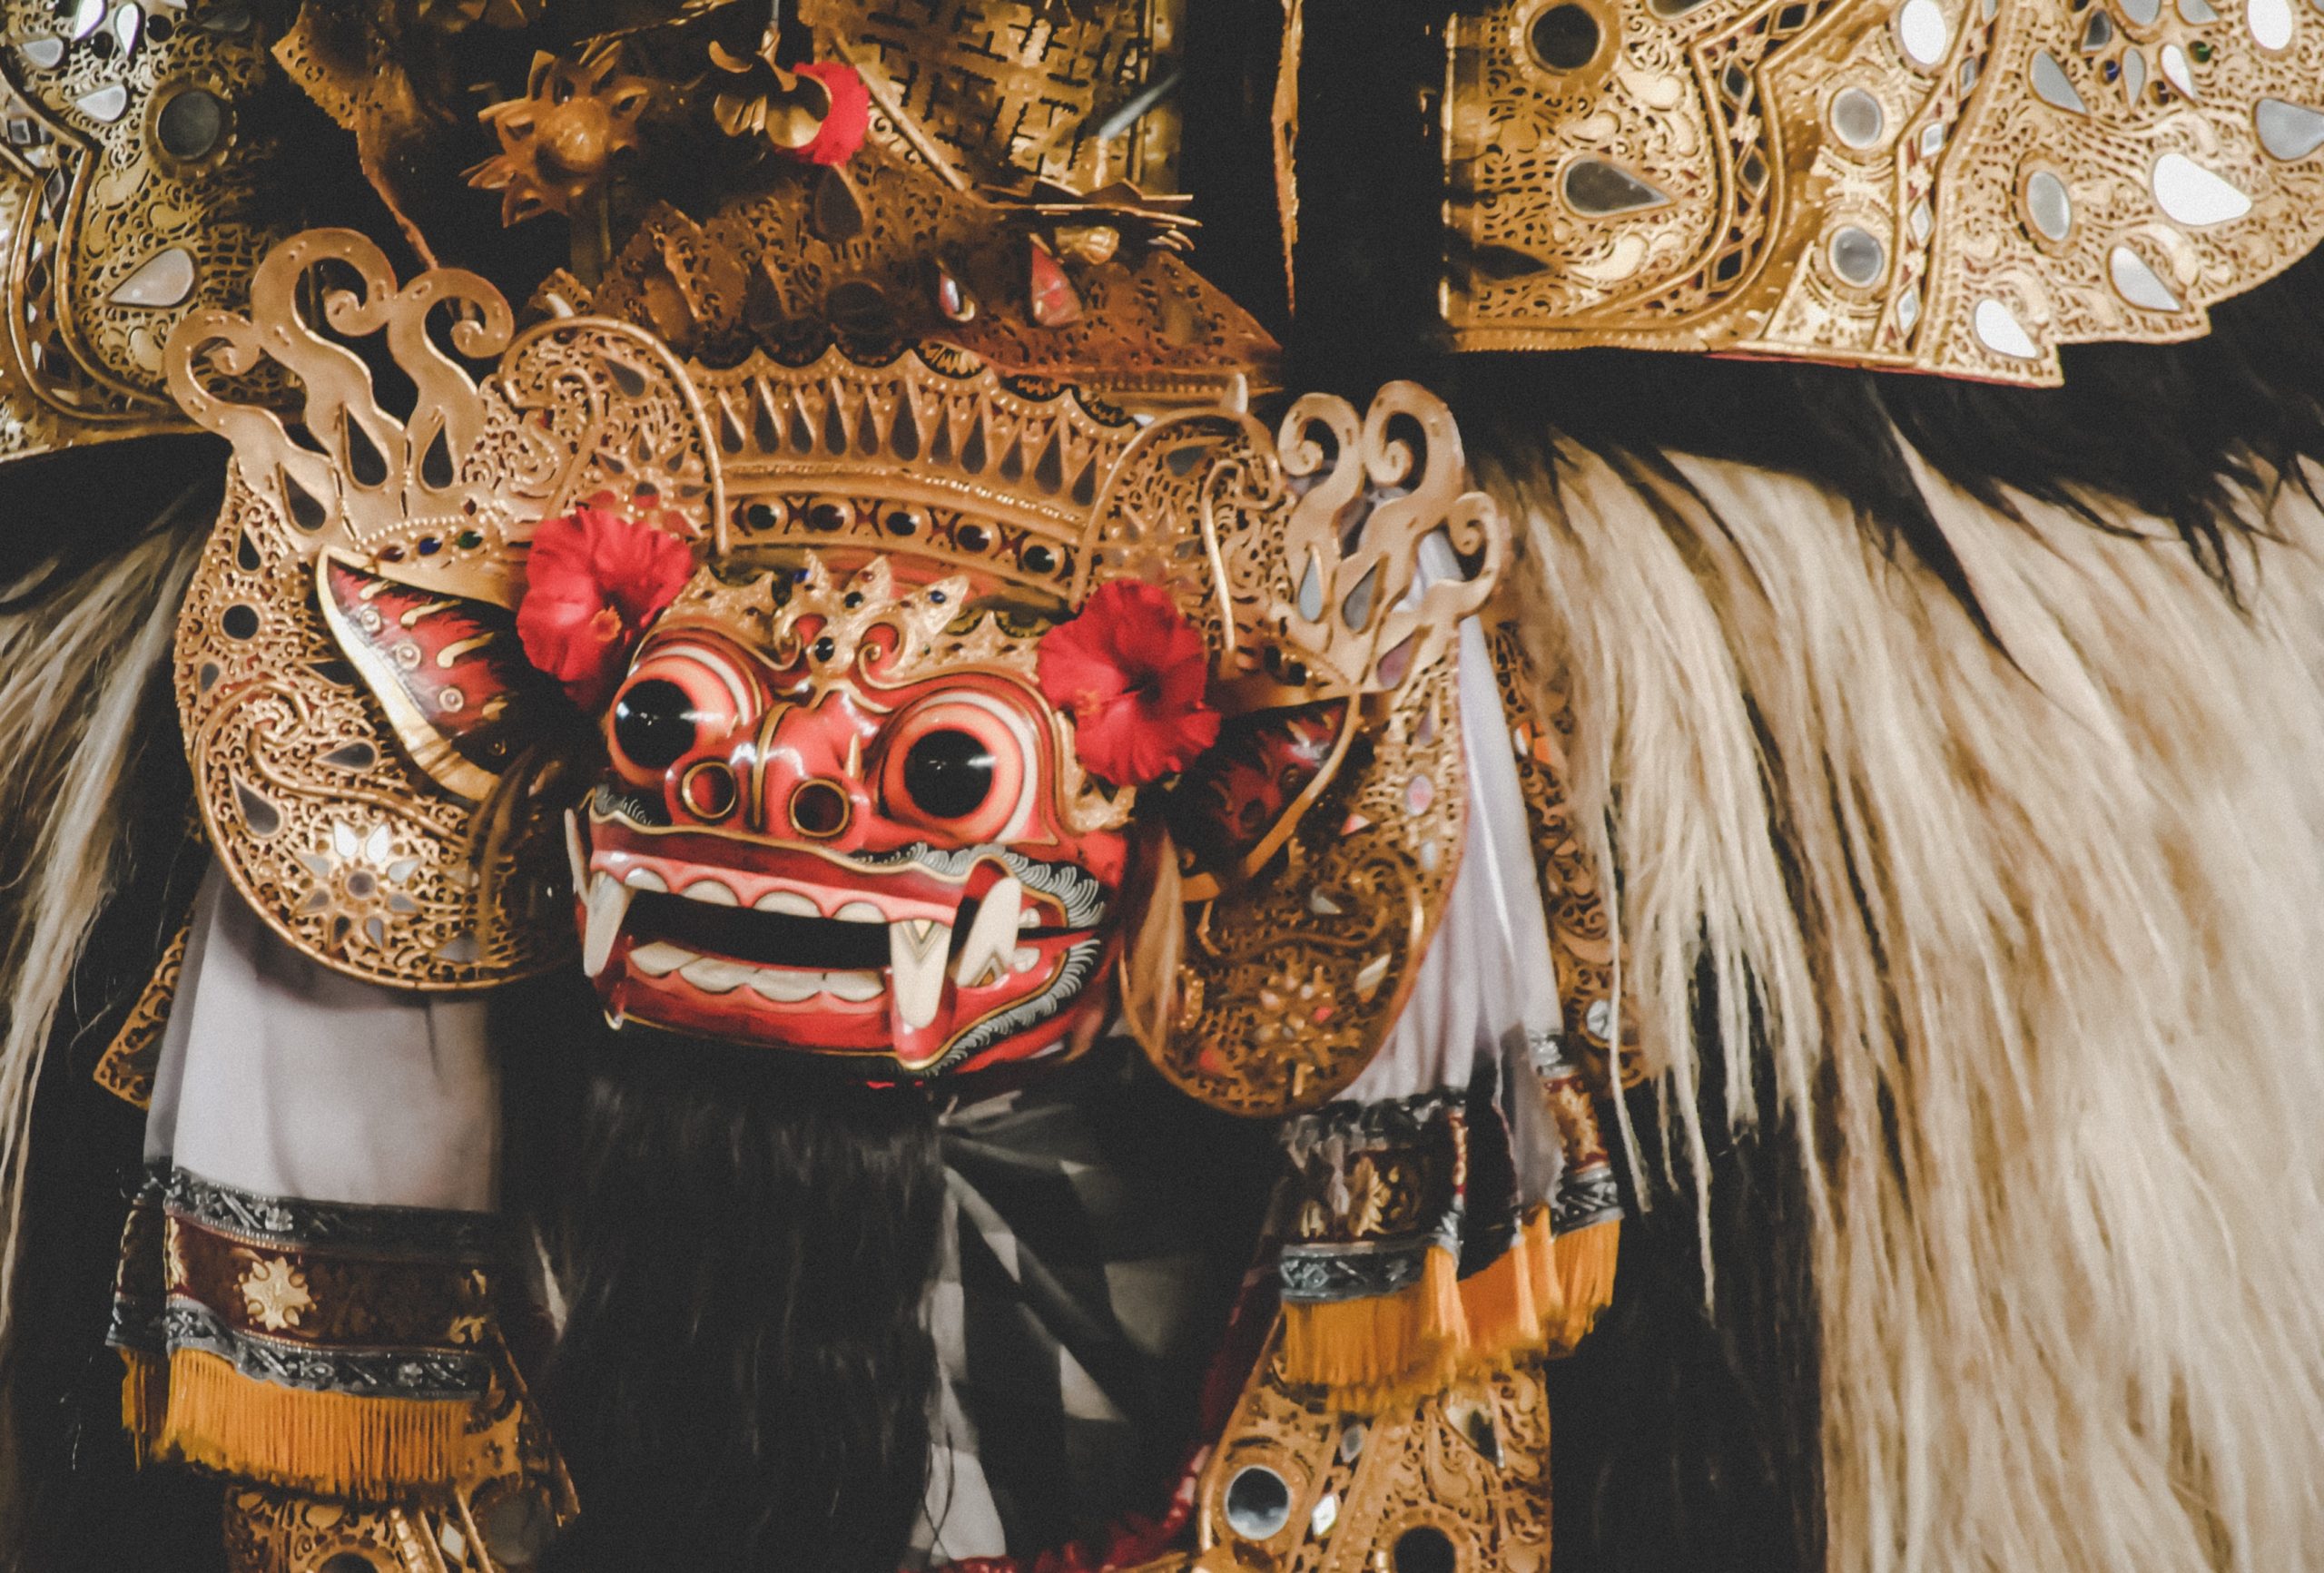 Mask as a souvenir from Bali